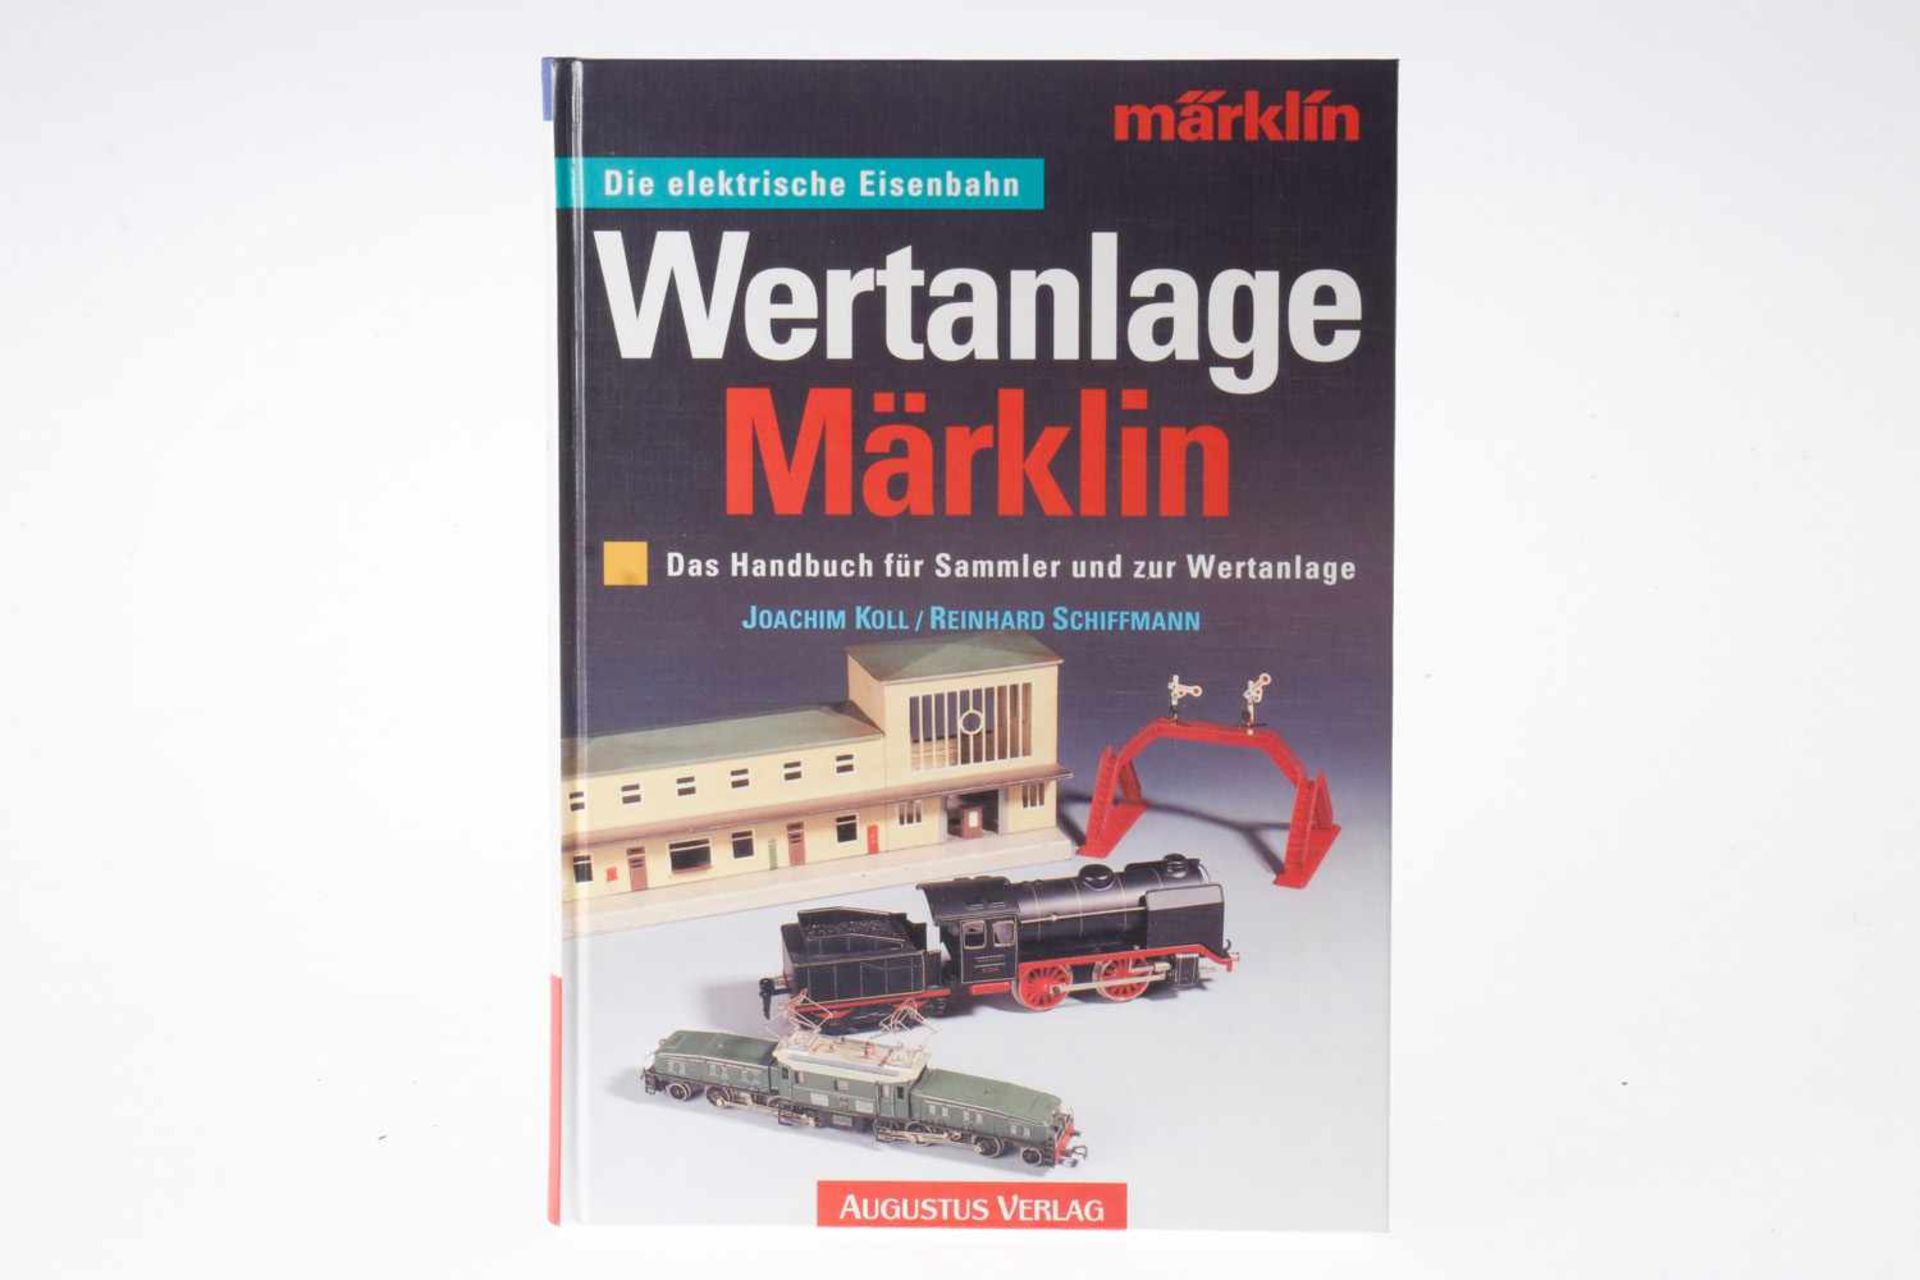 Märklin Buch "Wertanlage Märklin", Alterungsspuren